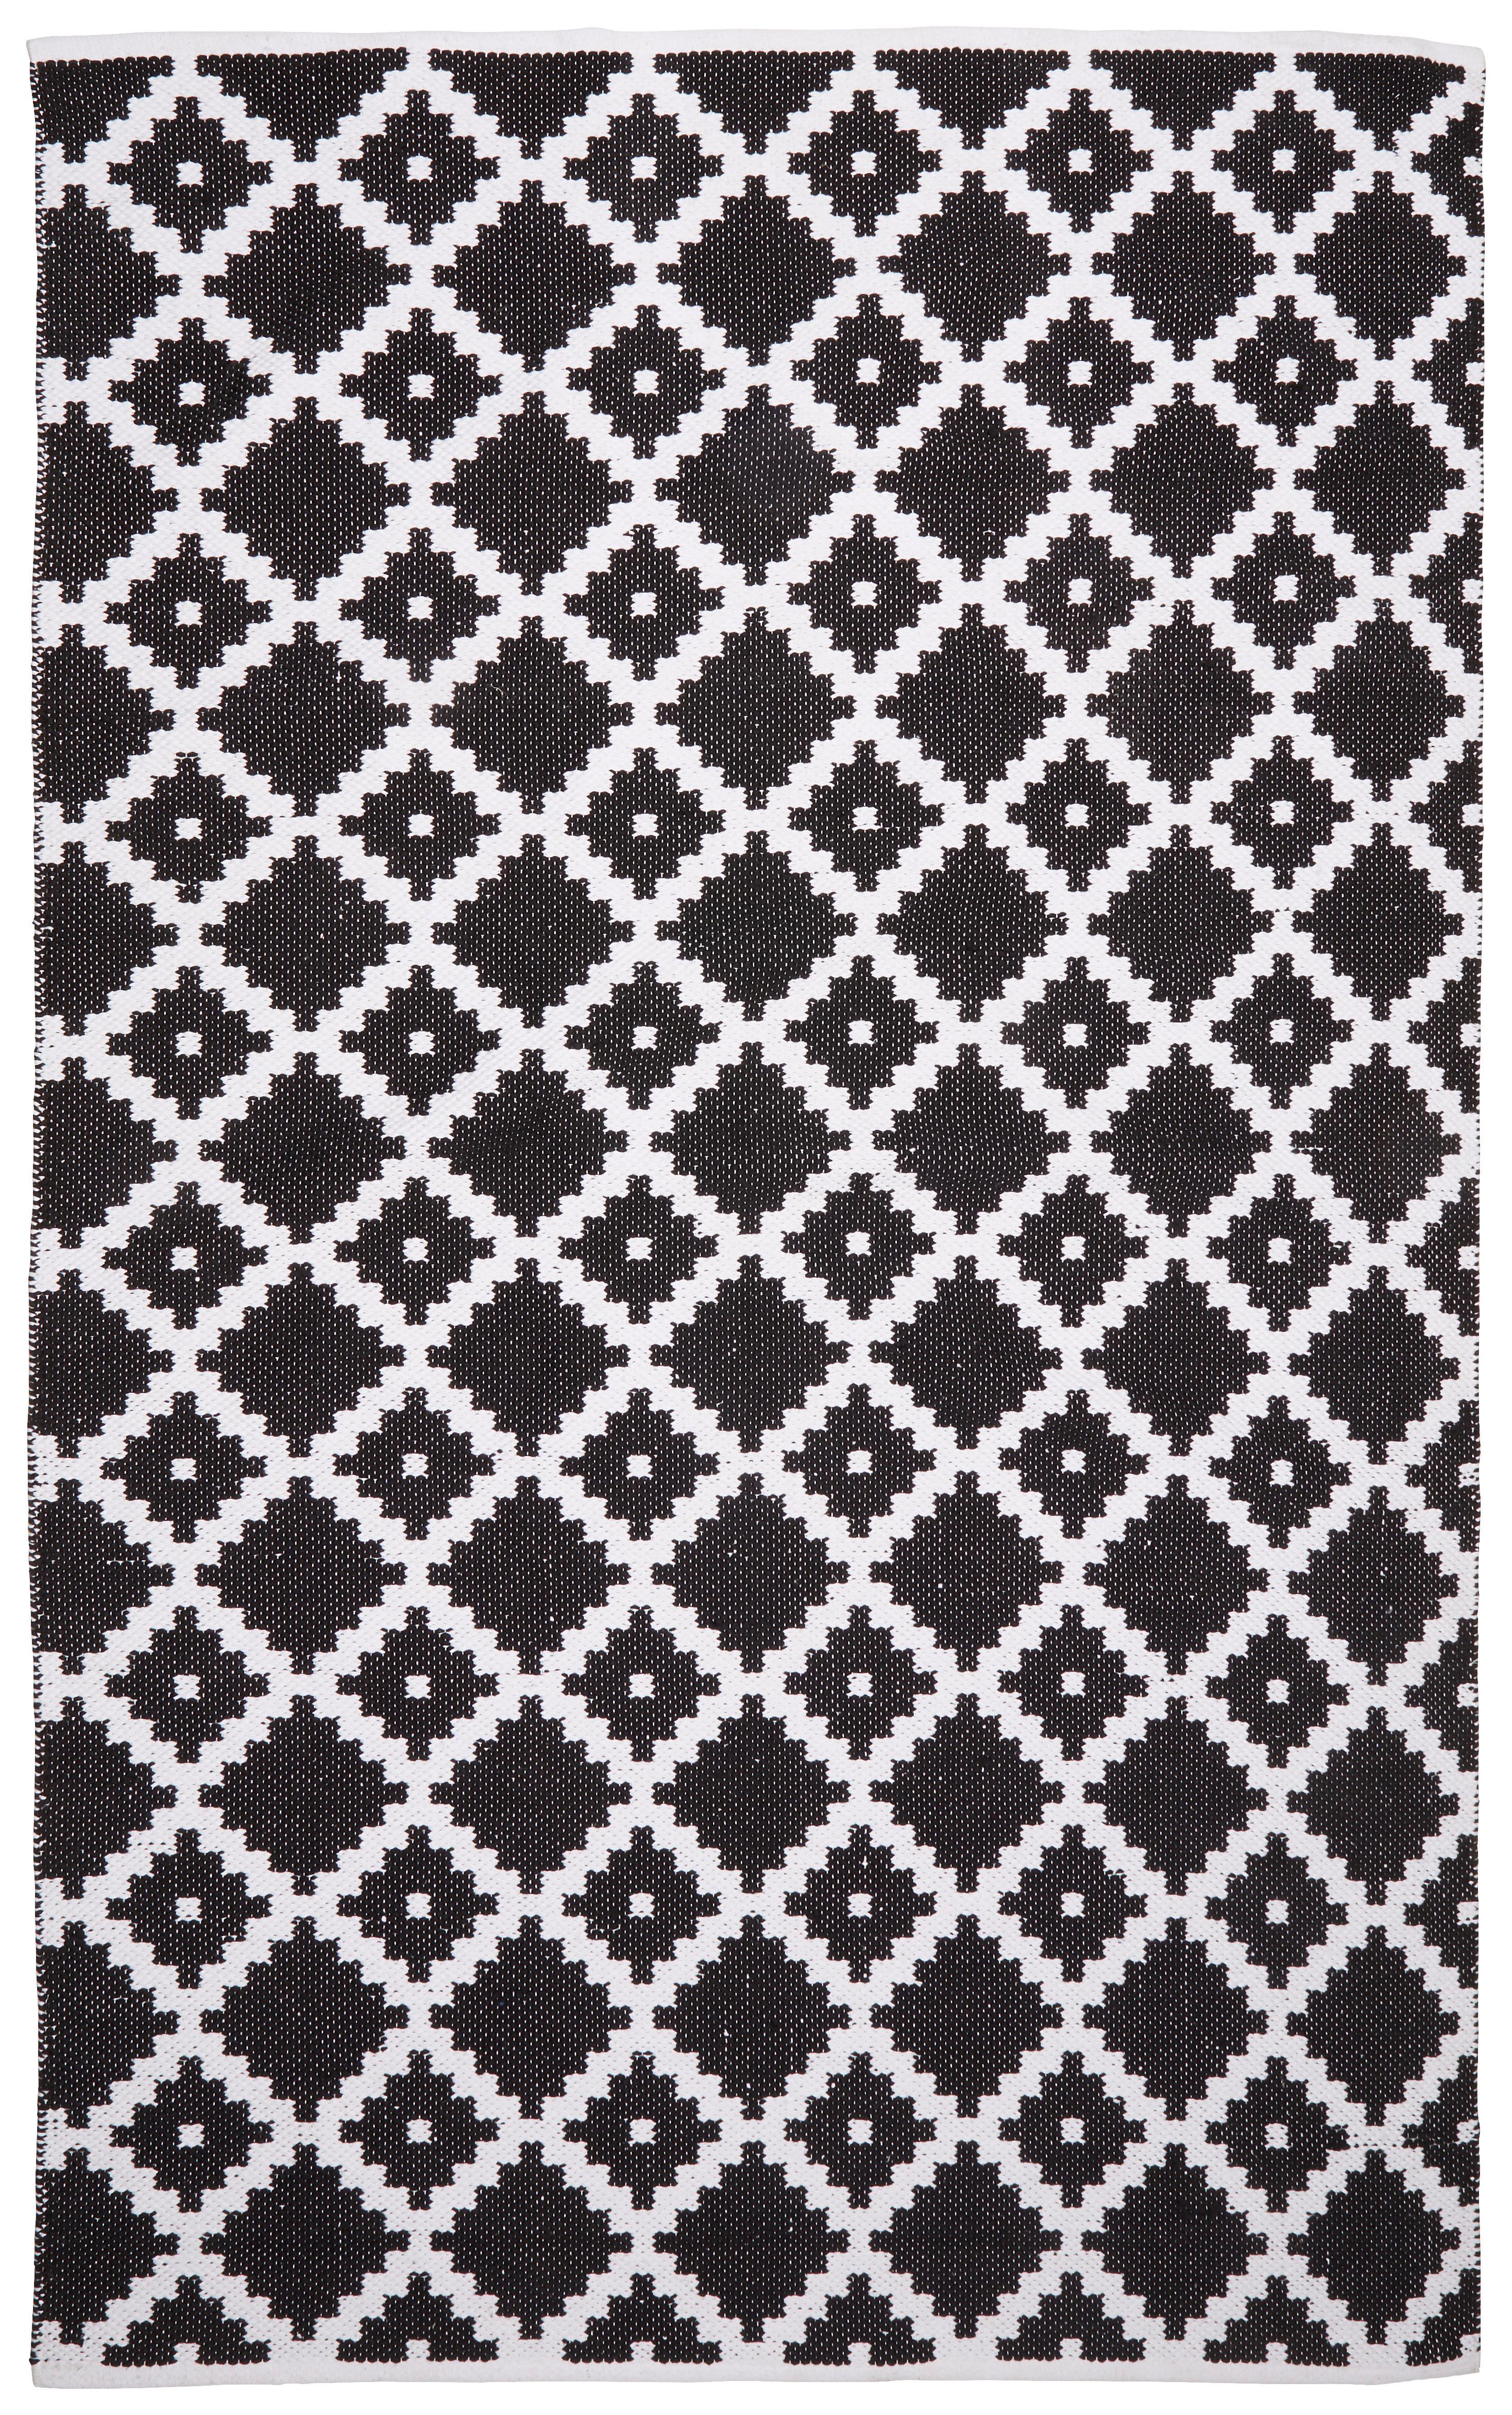 Koberec Parma - bílá/černá, textil (160/230cm) - Modern Living